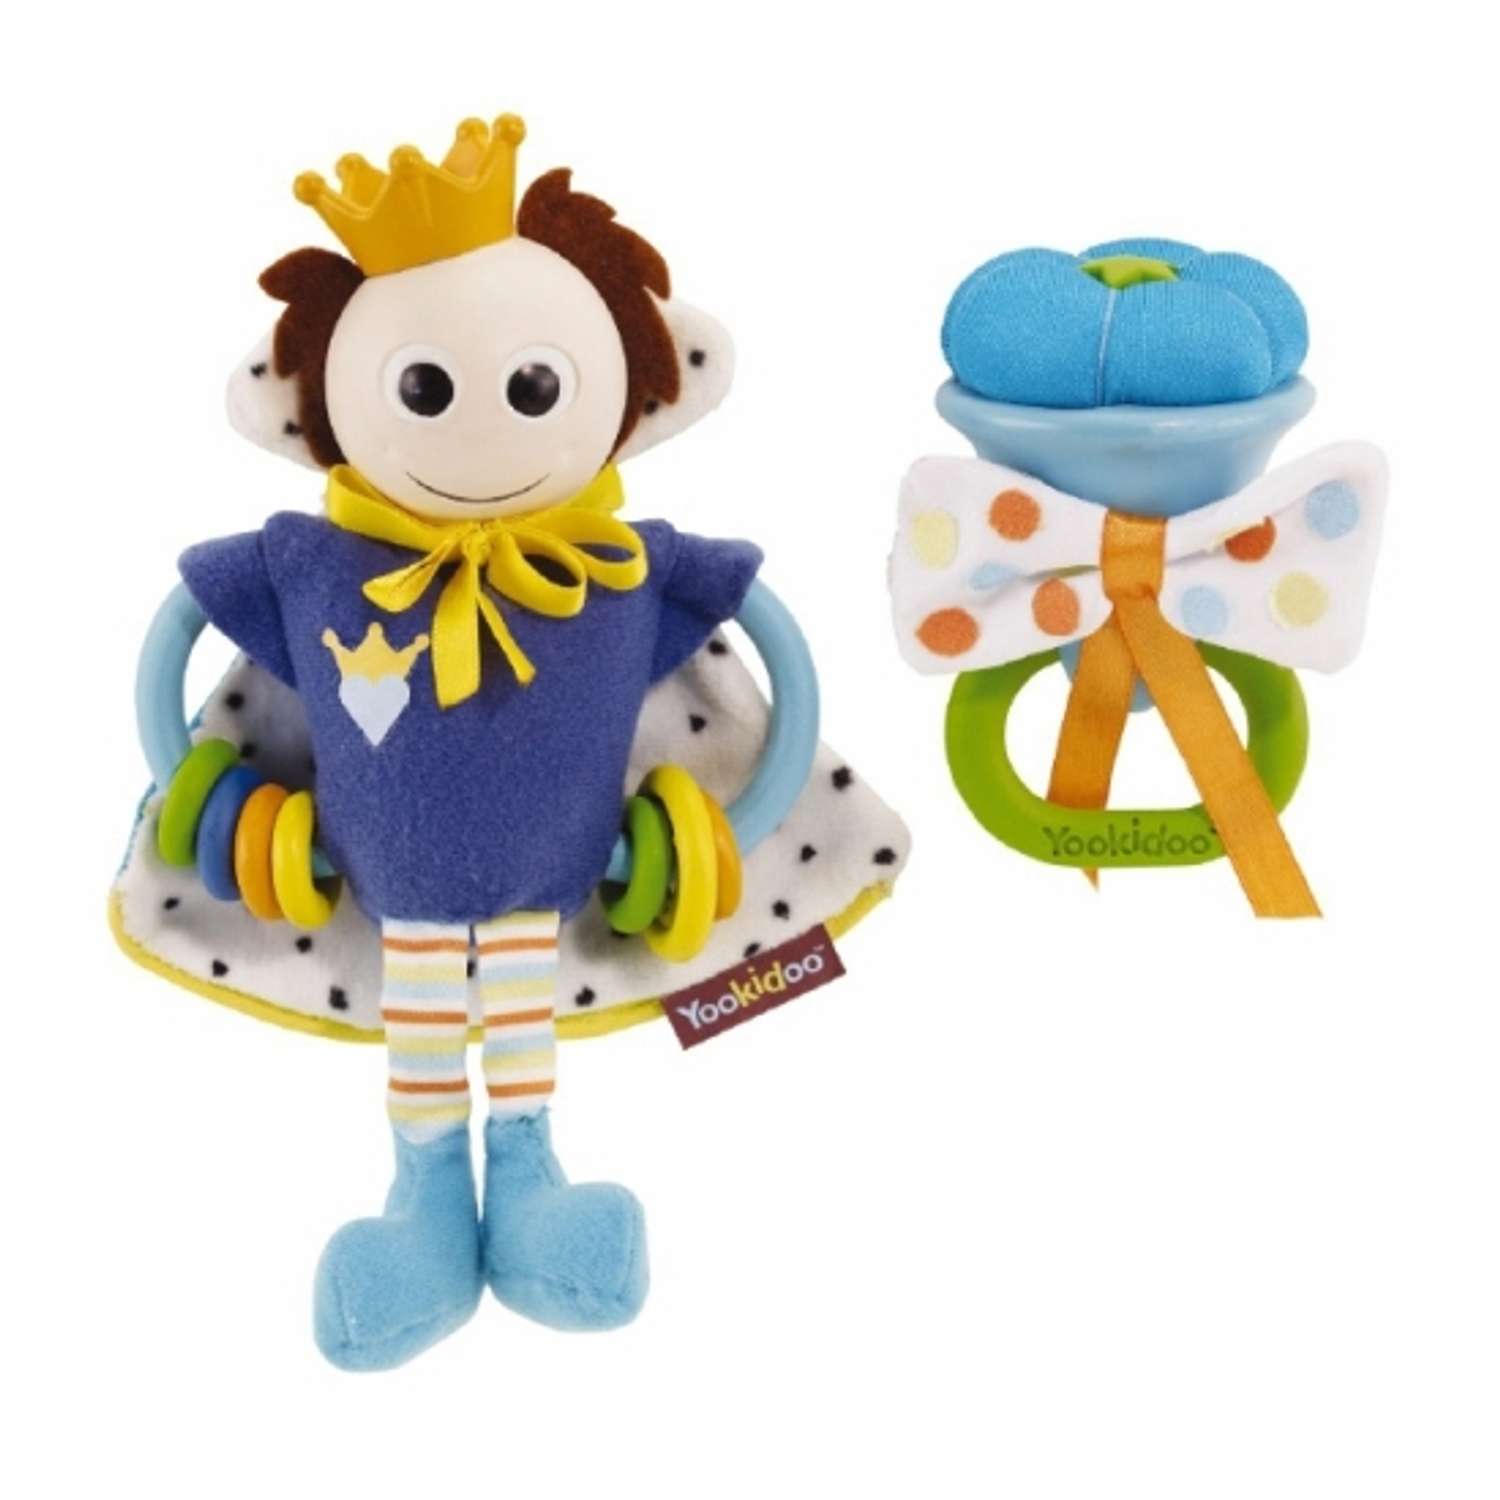 Развивающая игрушка Yookidoo Принц-Принцесса в ассортименте - фото 2